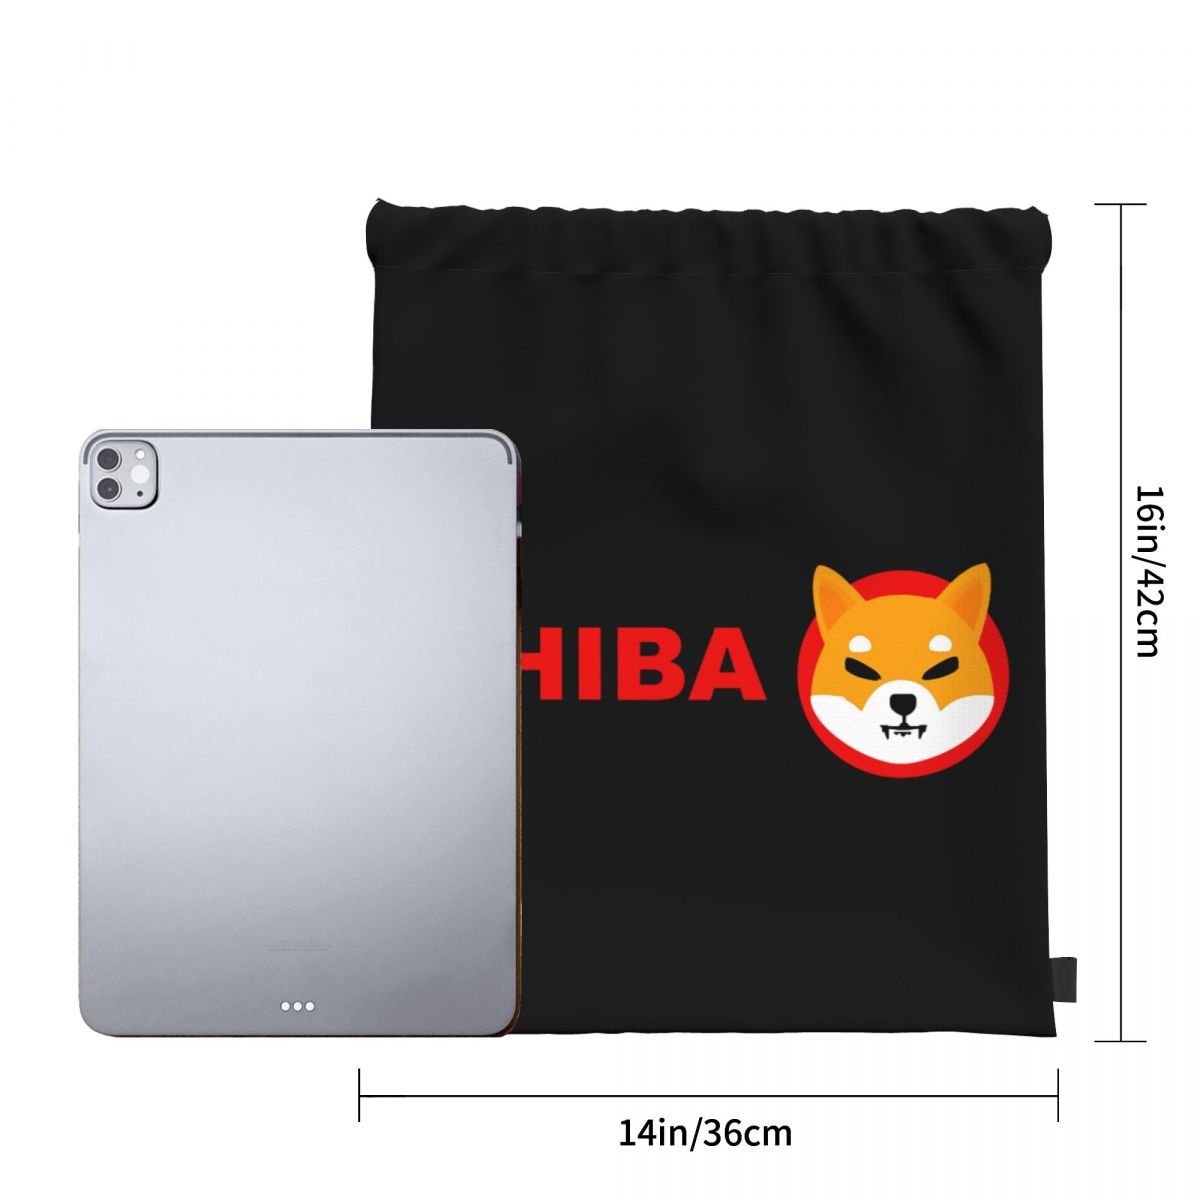 Shiba Inu coin  backpack